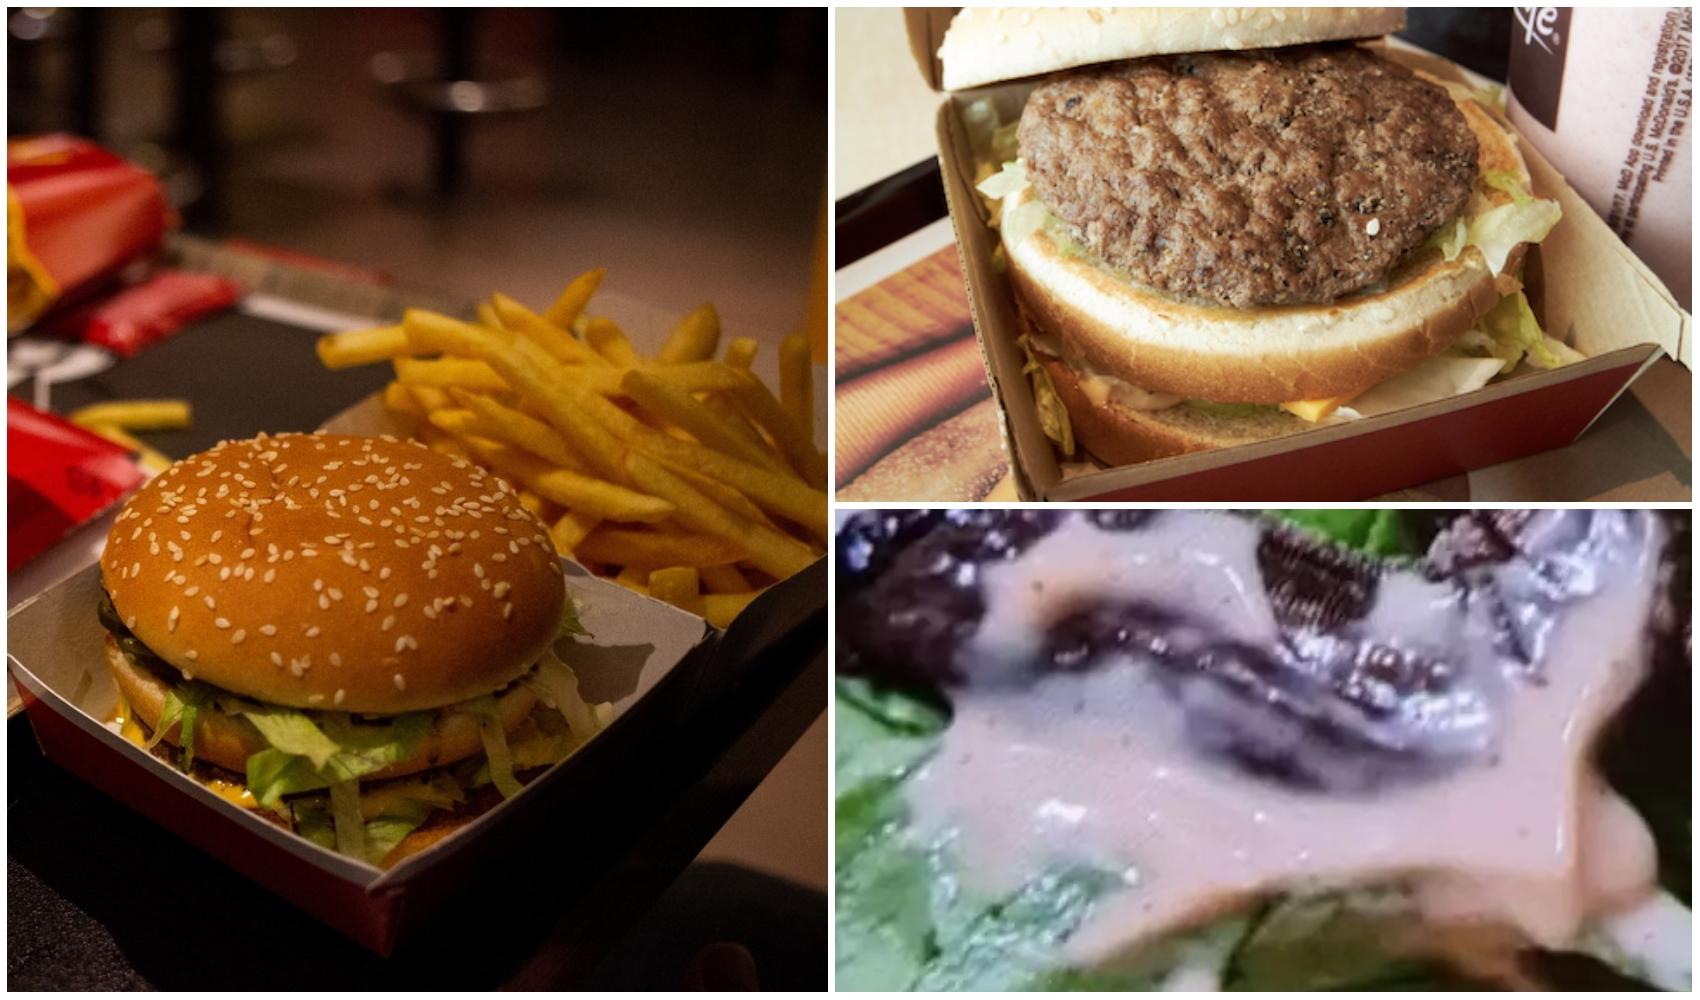 colaj foto cu burger comandat la fast food